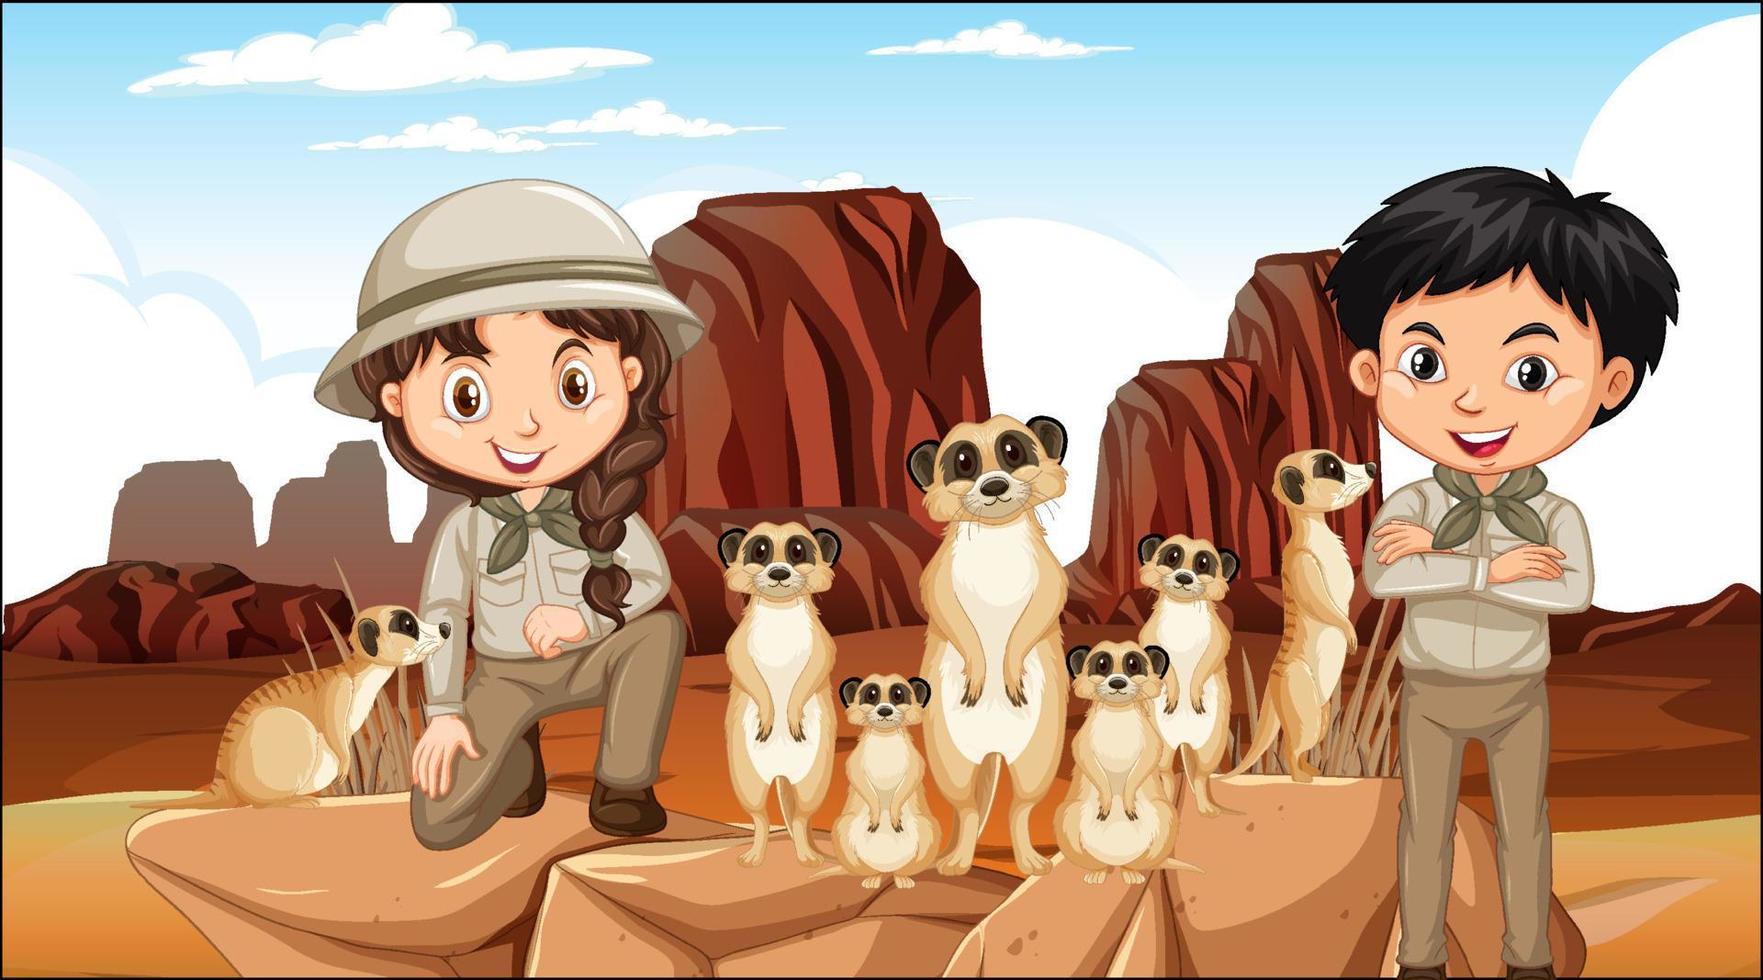 crianças com grupo de suricatas na floresta do deserto vetor